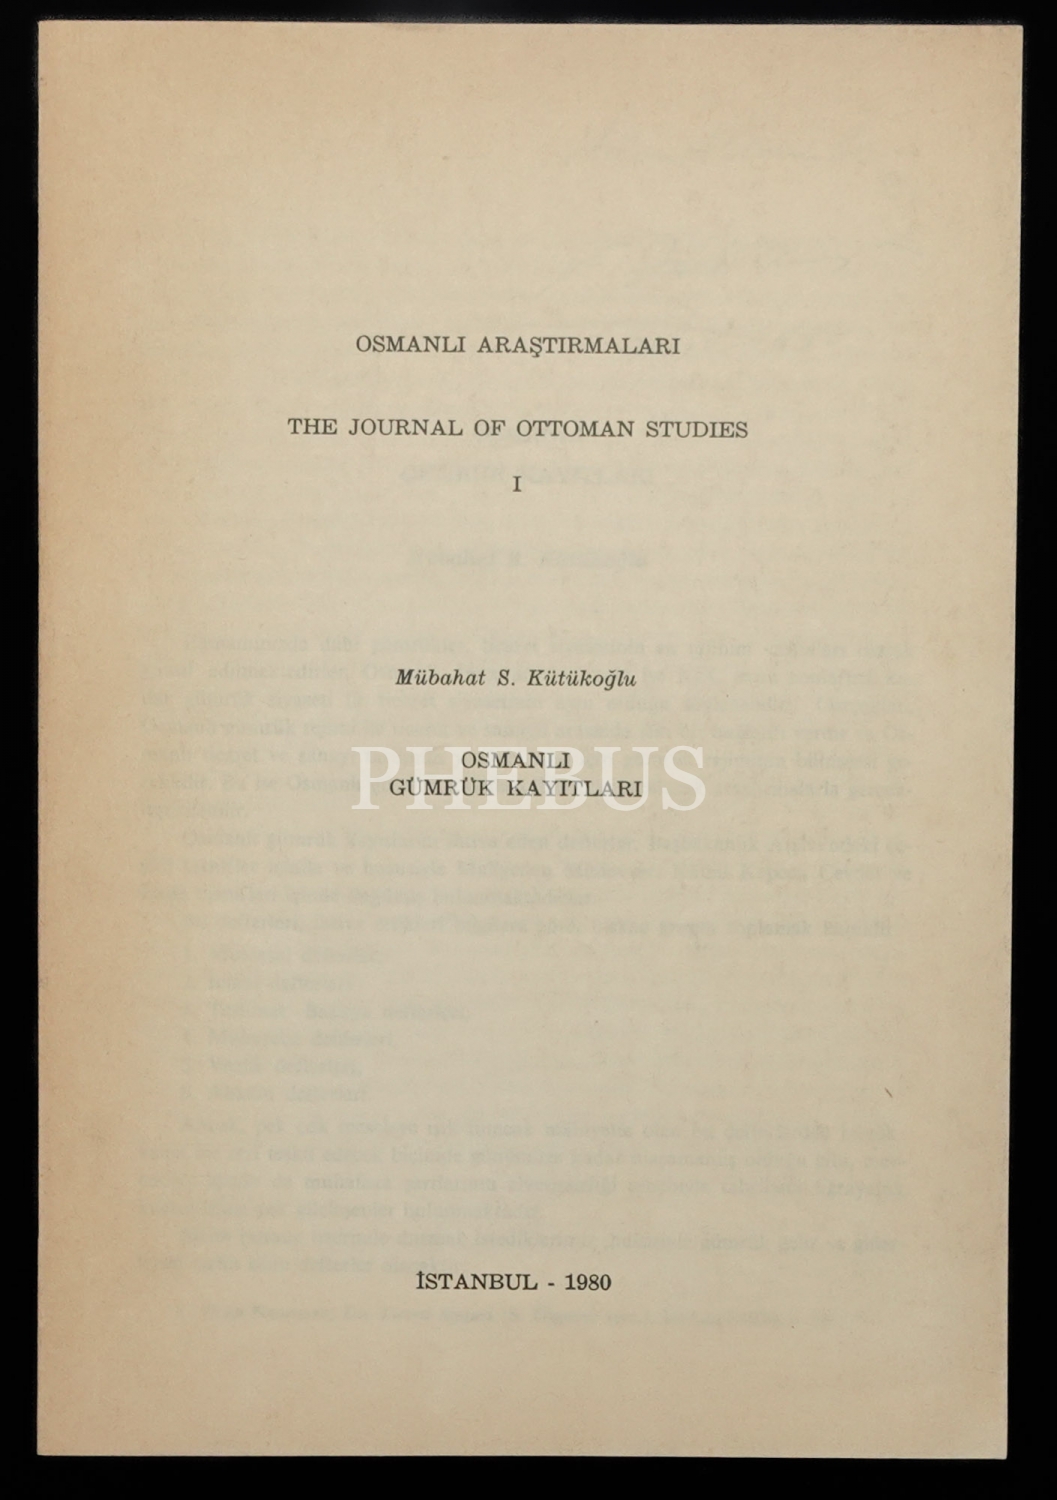 OSMANLI ARAŞTIRMALARI, Mübahat S. Kütükoğlu, 1980, The Journal Of Ottoman Studies (Ayrı Basım), 219-234 sayfa aralığı, 17x24 cm...